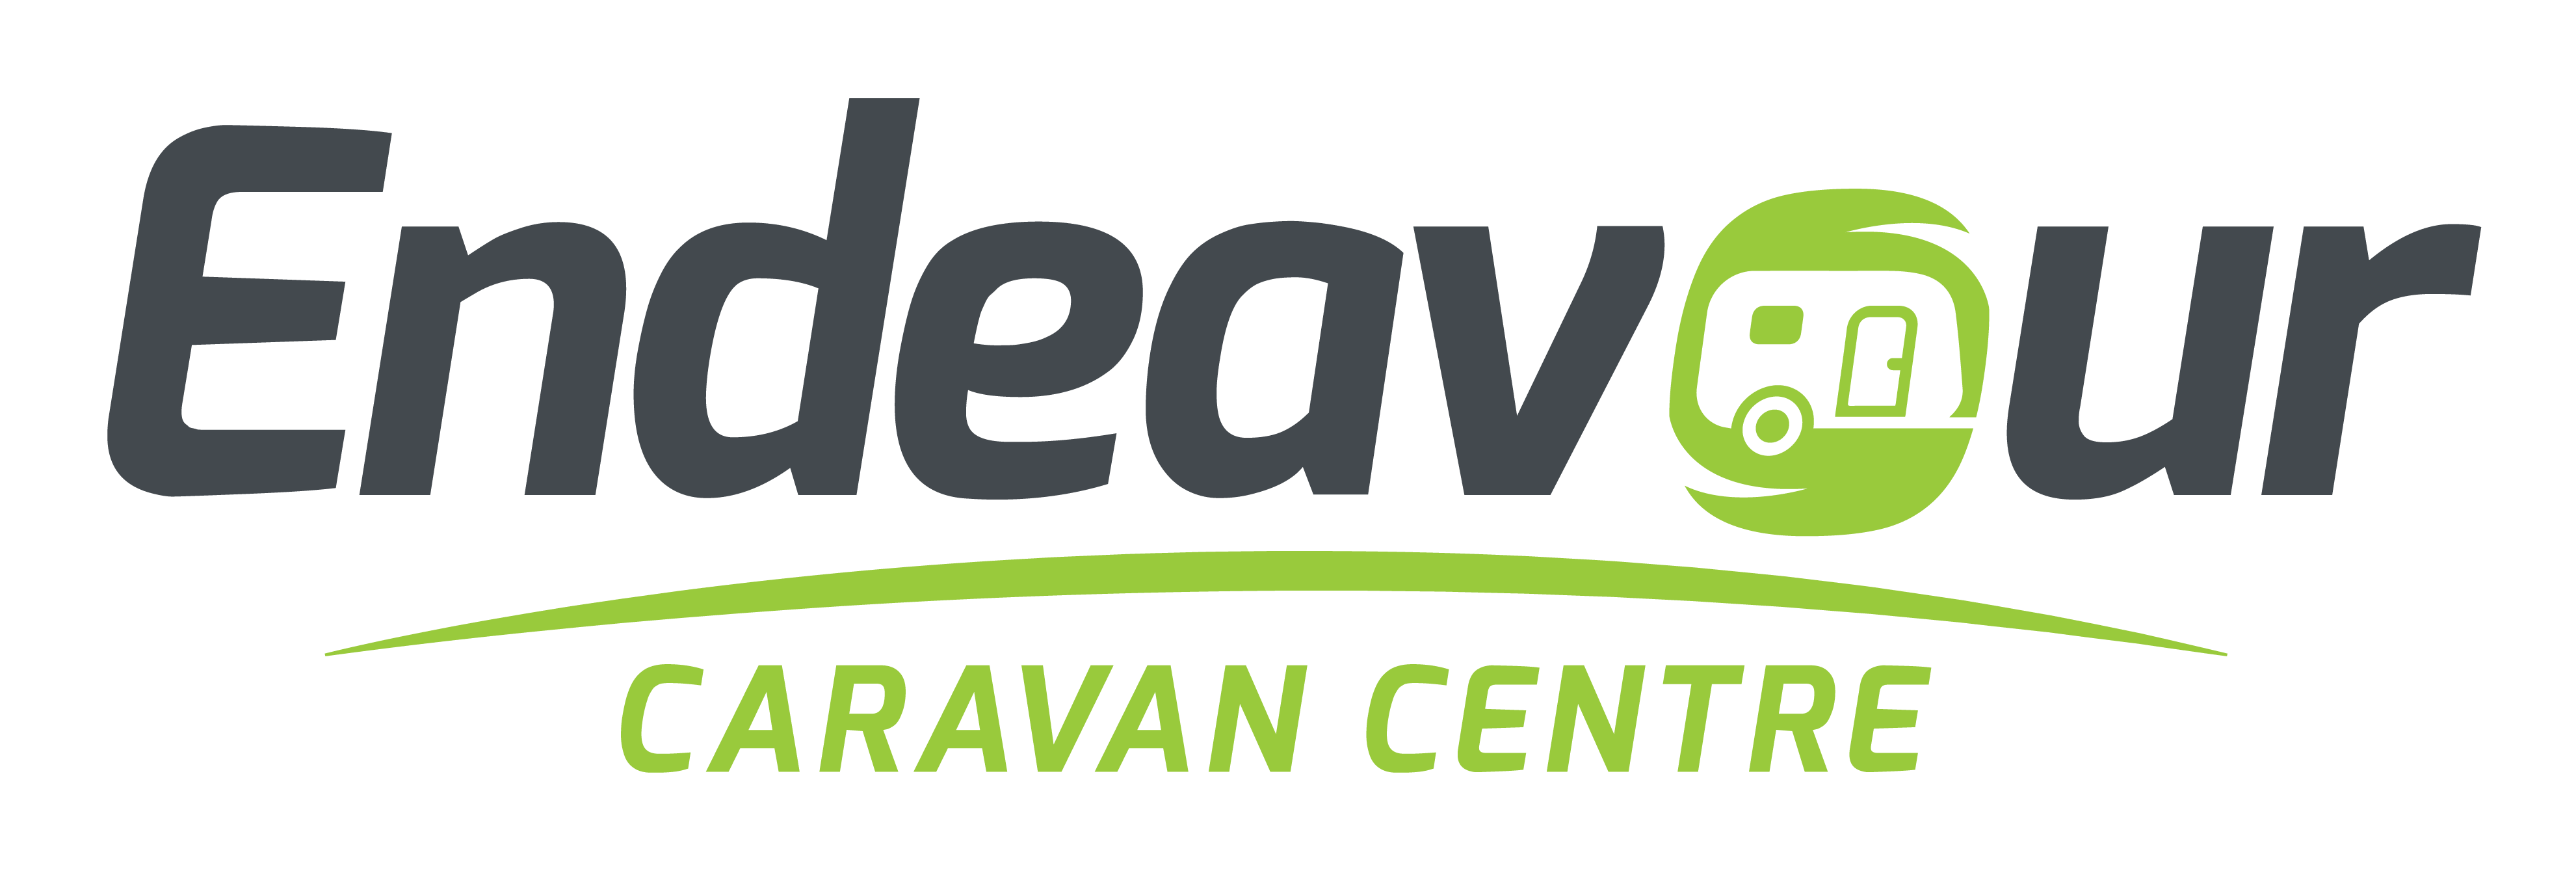 Endeavour Caravan Centre